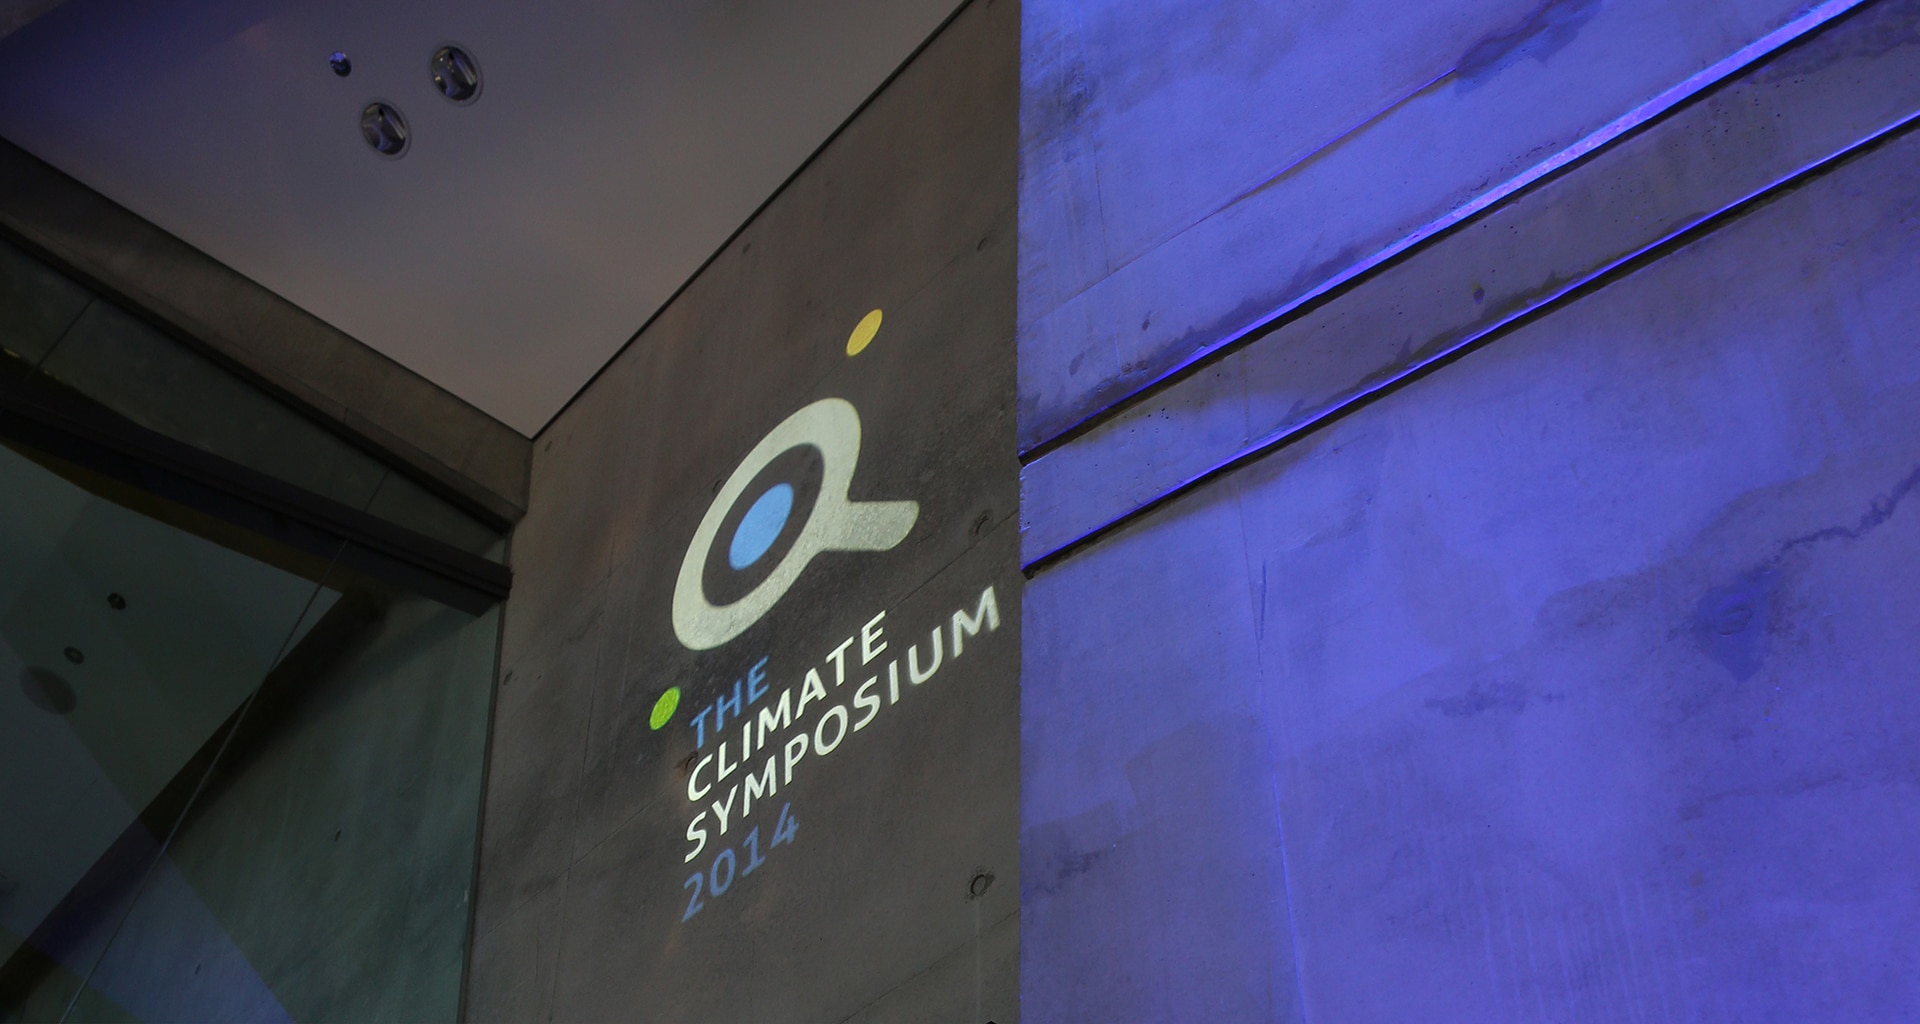 Climate Symposium